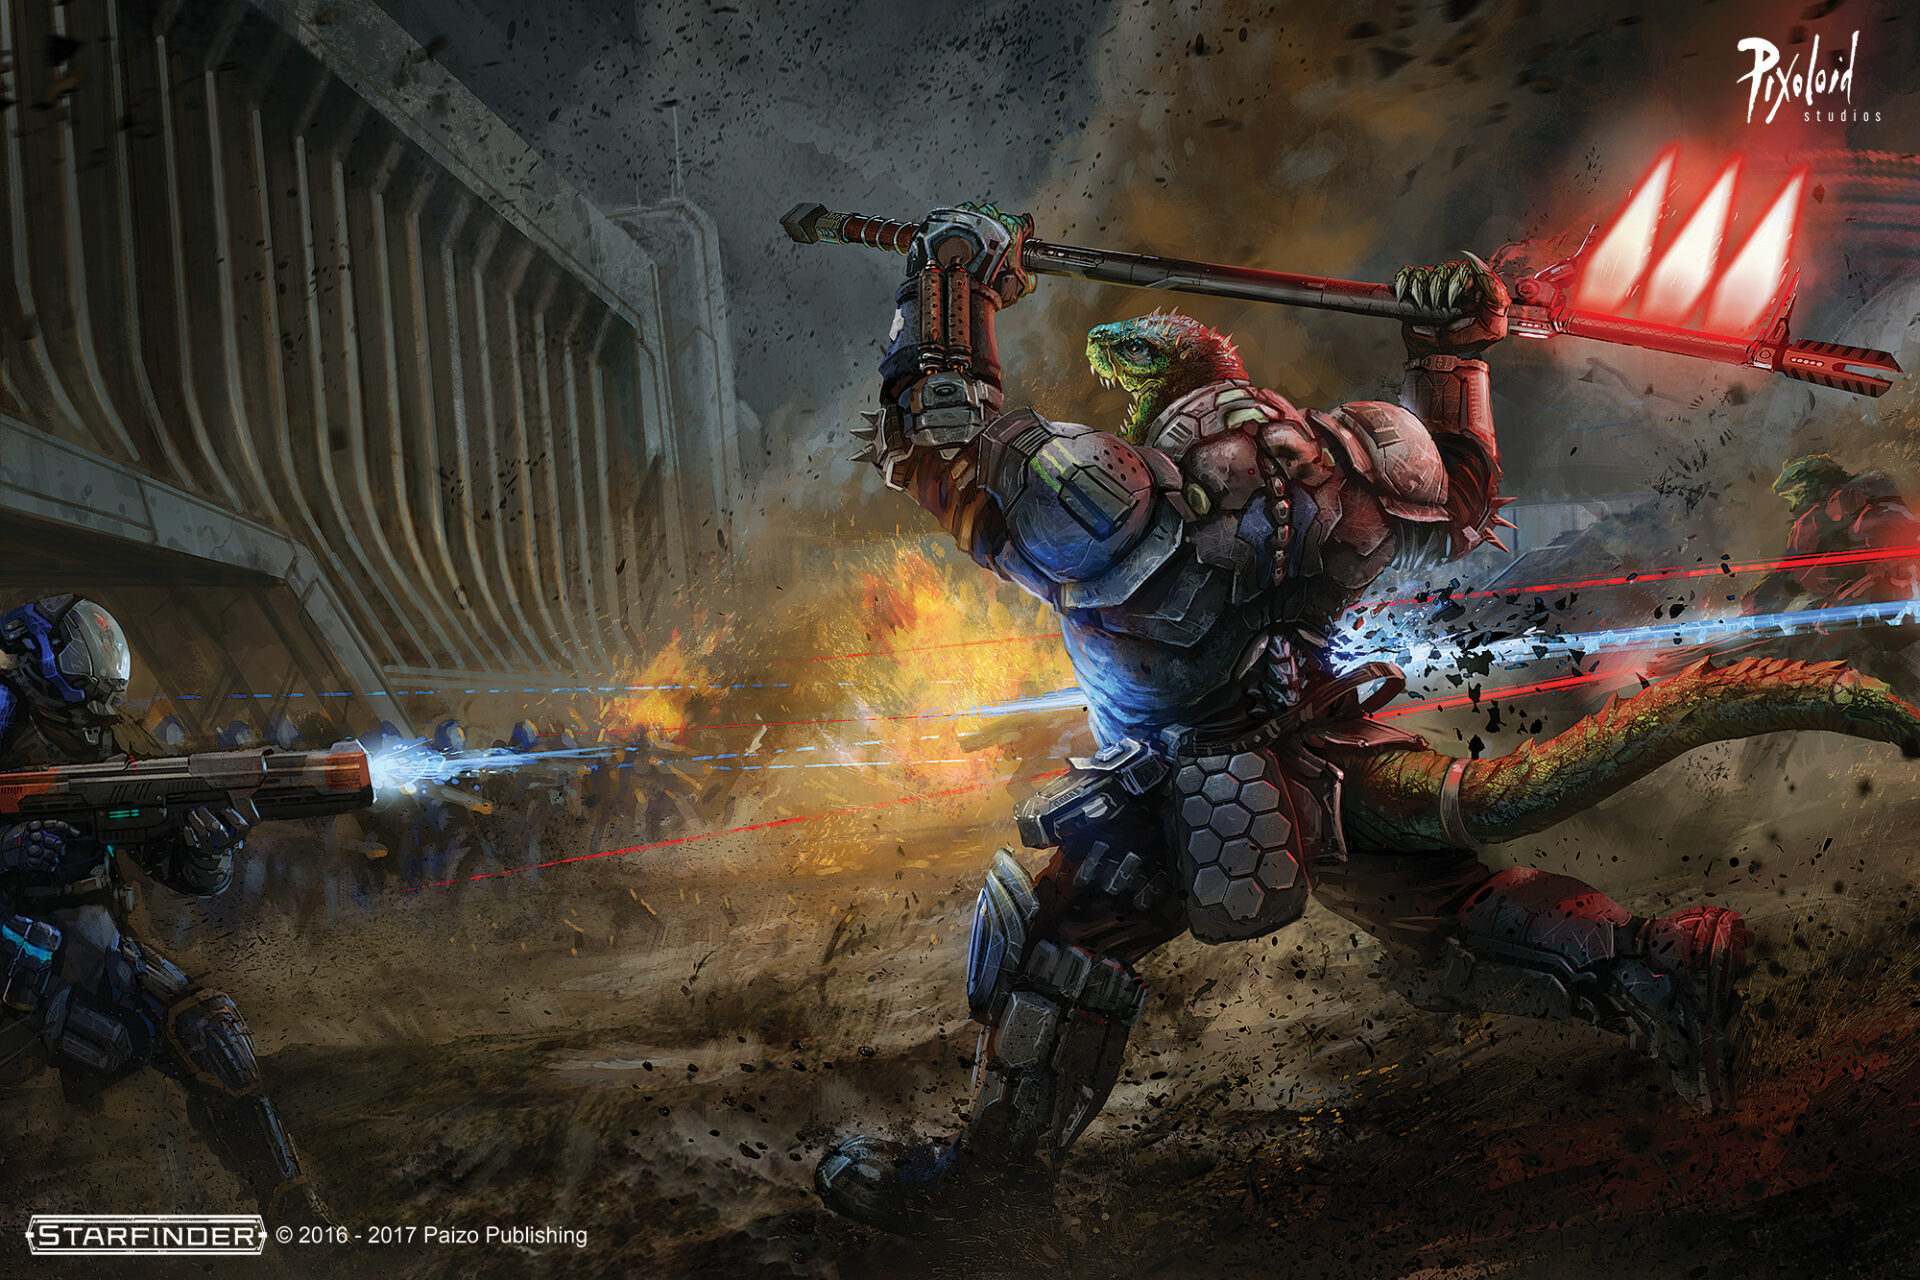 Starfinder illustration - laser battle scene